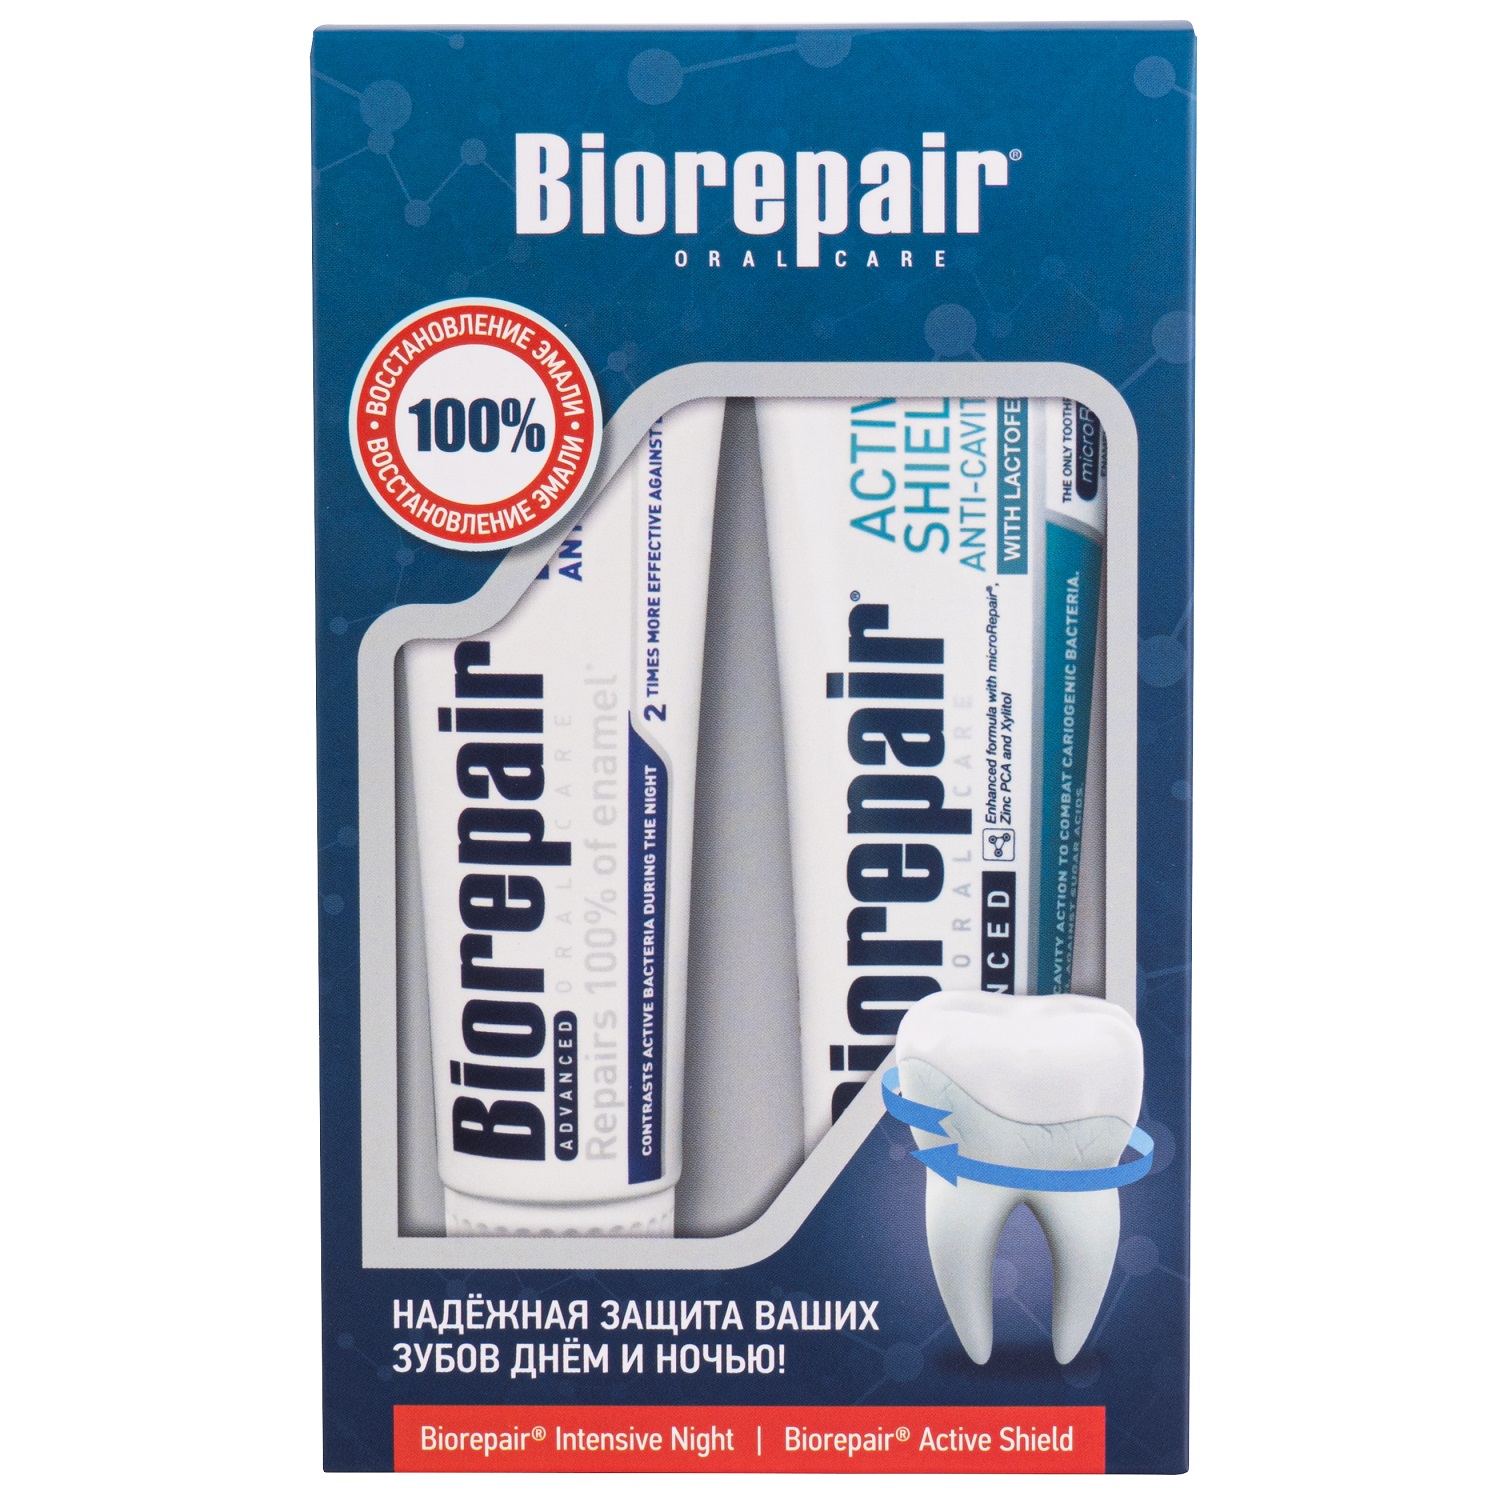 Biorepair Набор зубных паст Здоровая улыбка: Active Shield 75 мл + Intensive Night Repair 75 мл (Biorepair, Отбеливание и лечение)